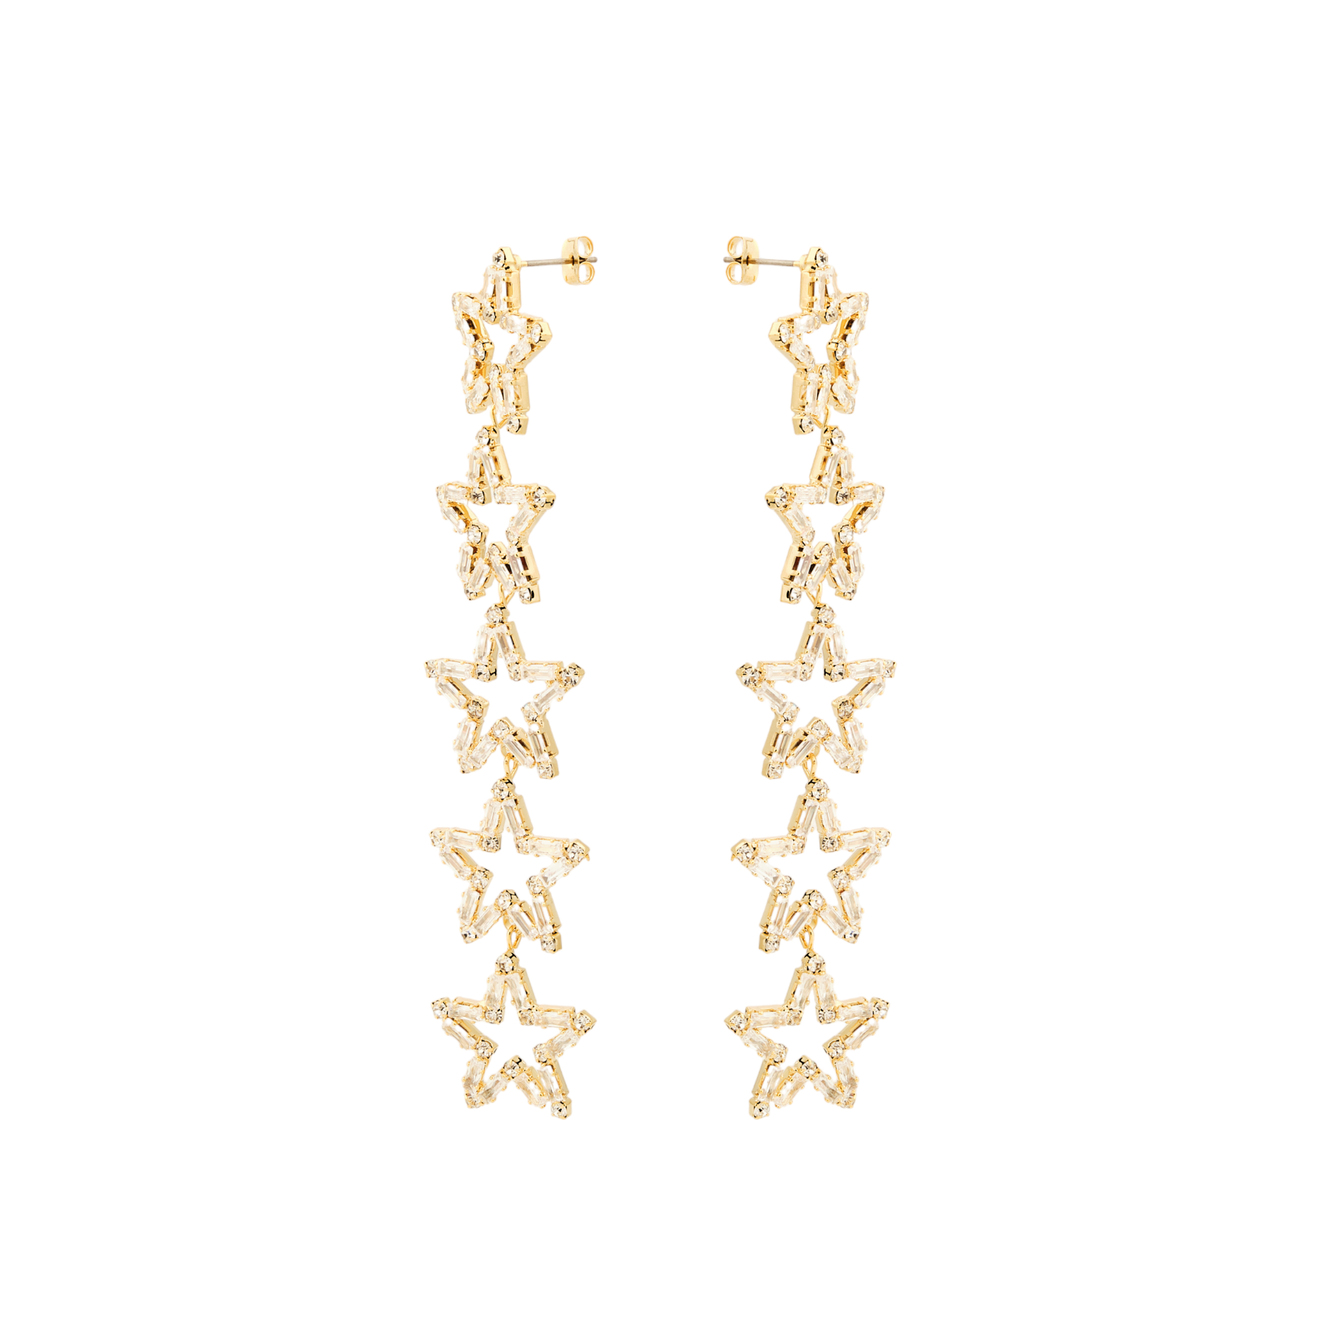 Herald Percy Золотистые длинные серьги с звездами с кристаллами herald percy золотистые серьги полукруги с кристаллами